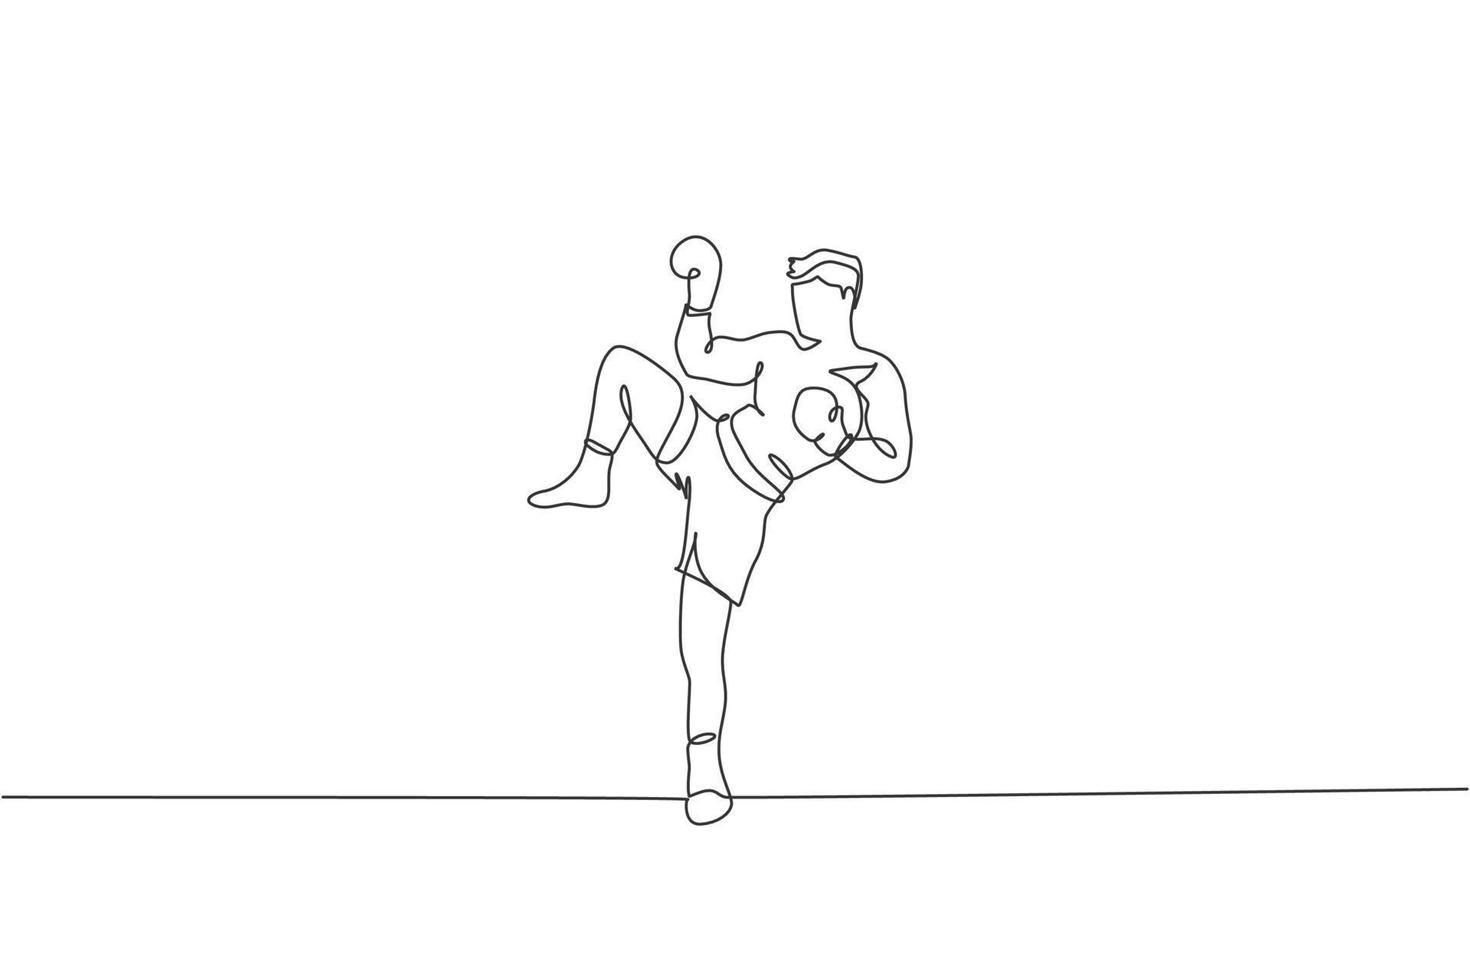 en kontinuerlig linjeteckning av ung sportig muay thai boxerman som förbereder sig för att slåss, ställningspark på boxarenan. fighting sport spelkoncept. dynamisk enda rad rita design vektorillustration grafik vektor